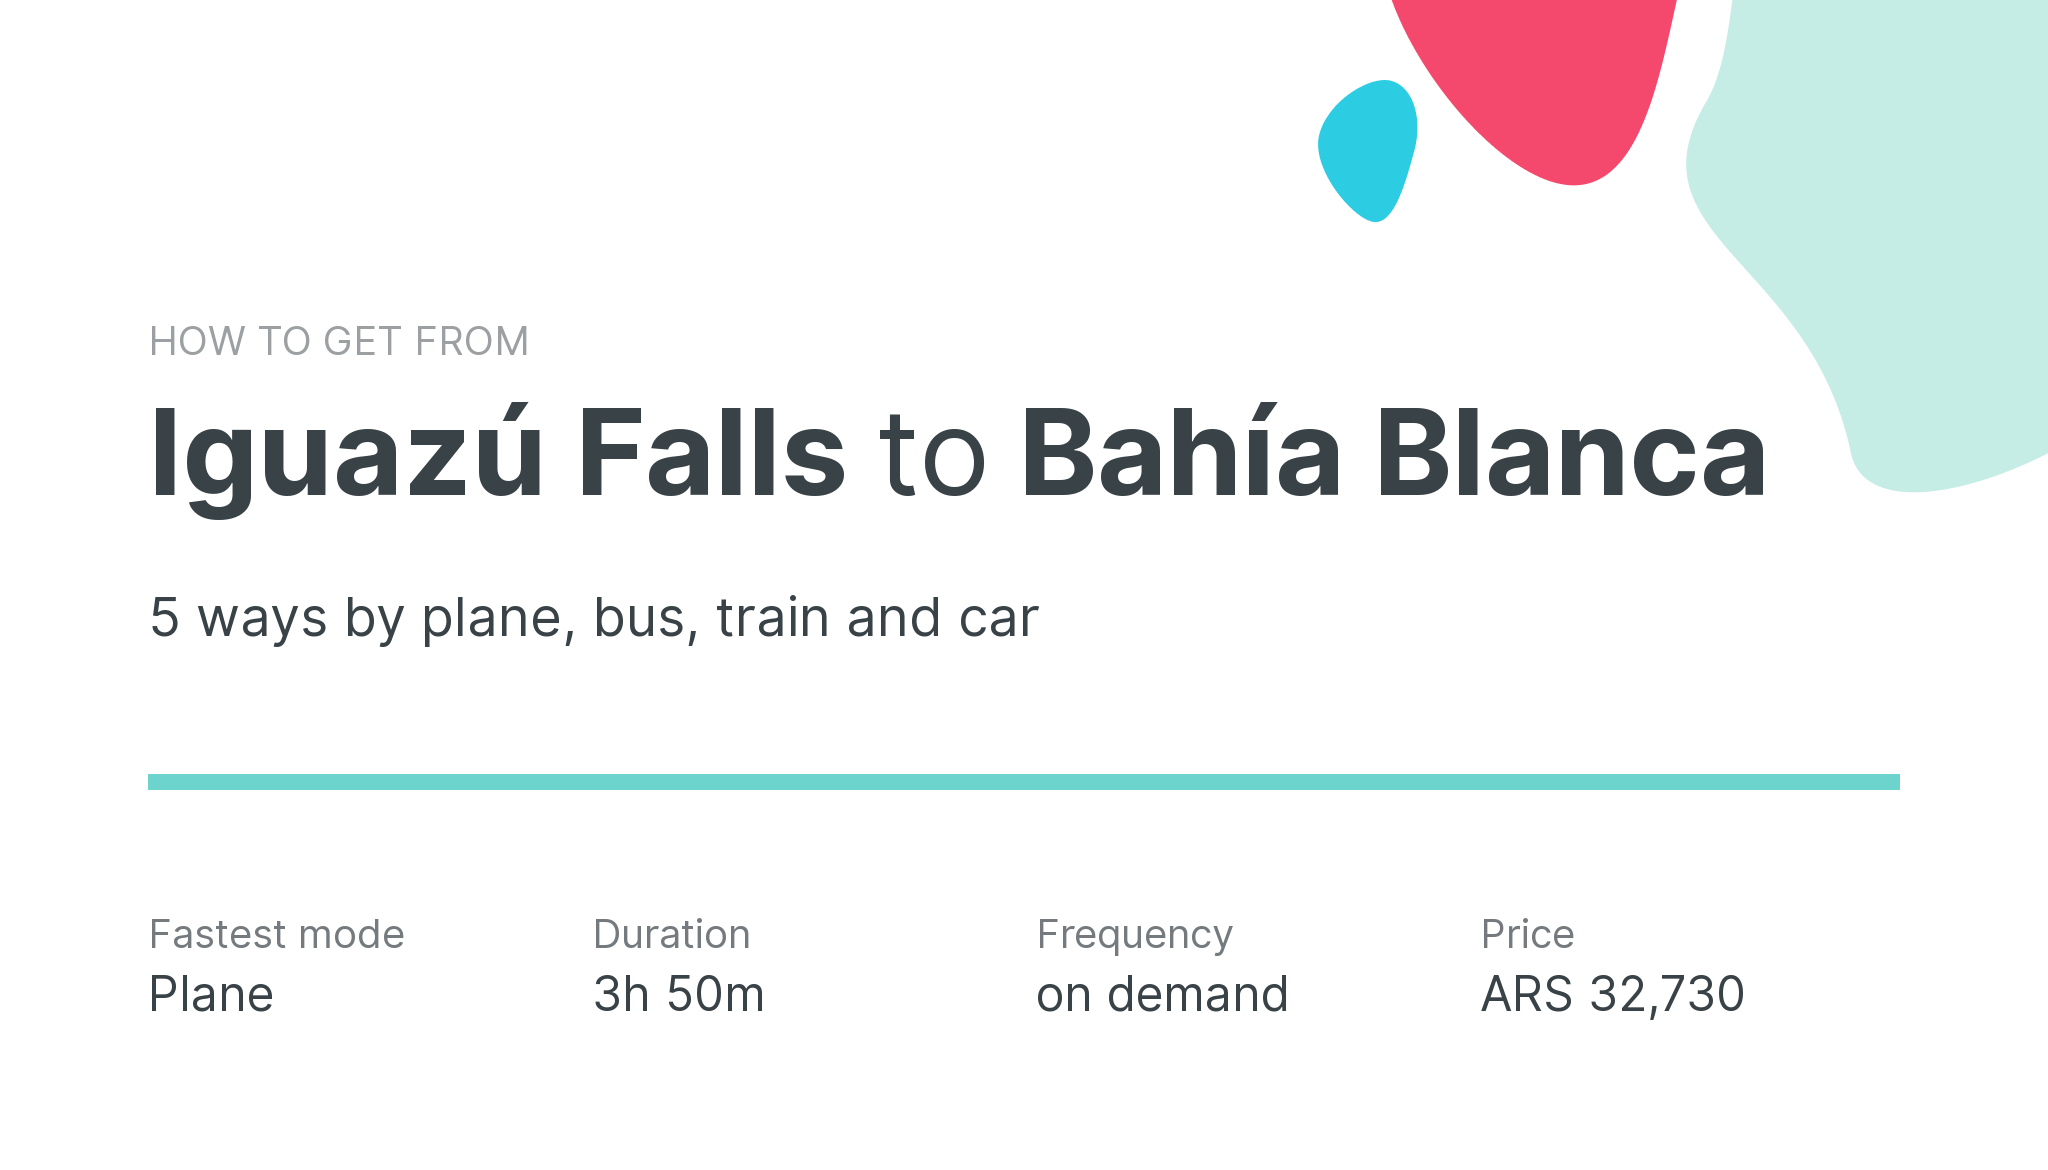 How do I get from Iguazú Falls to Bahía Blanca